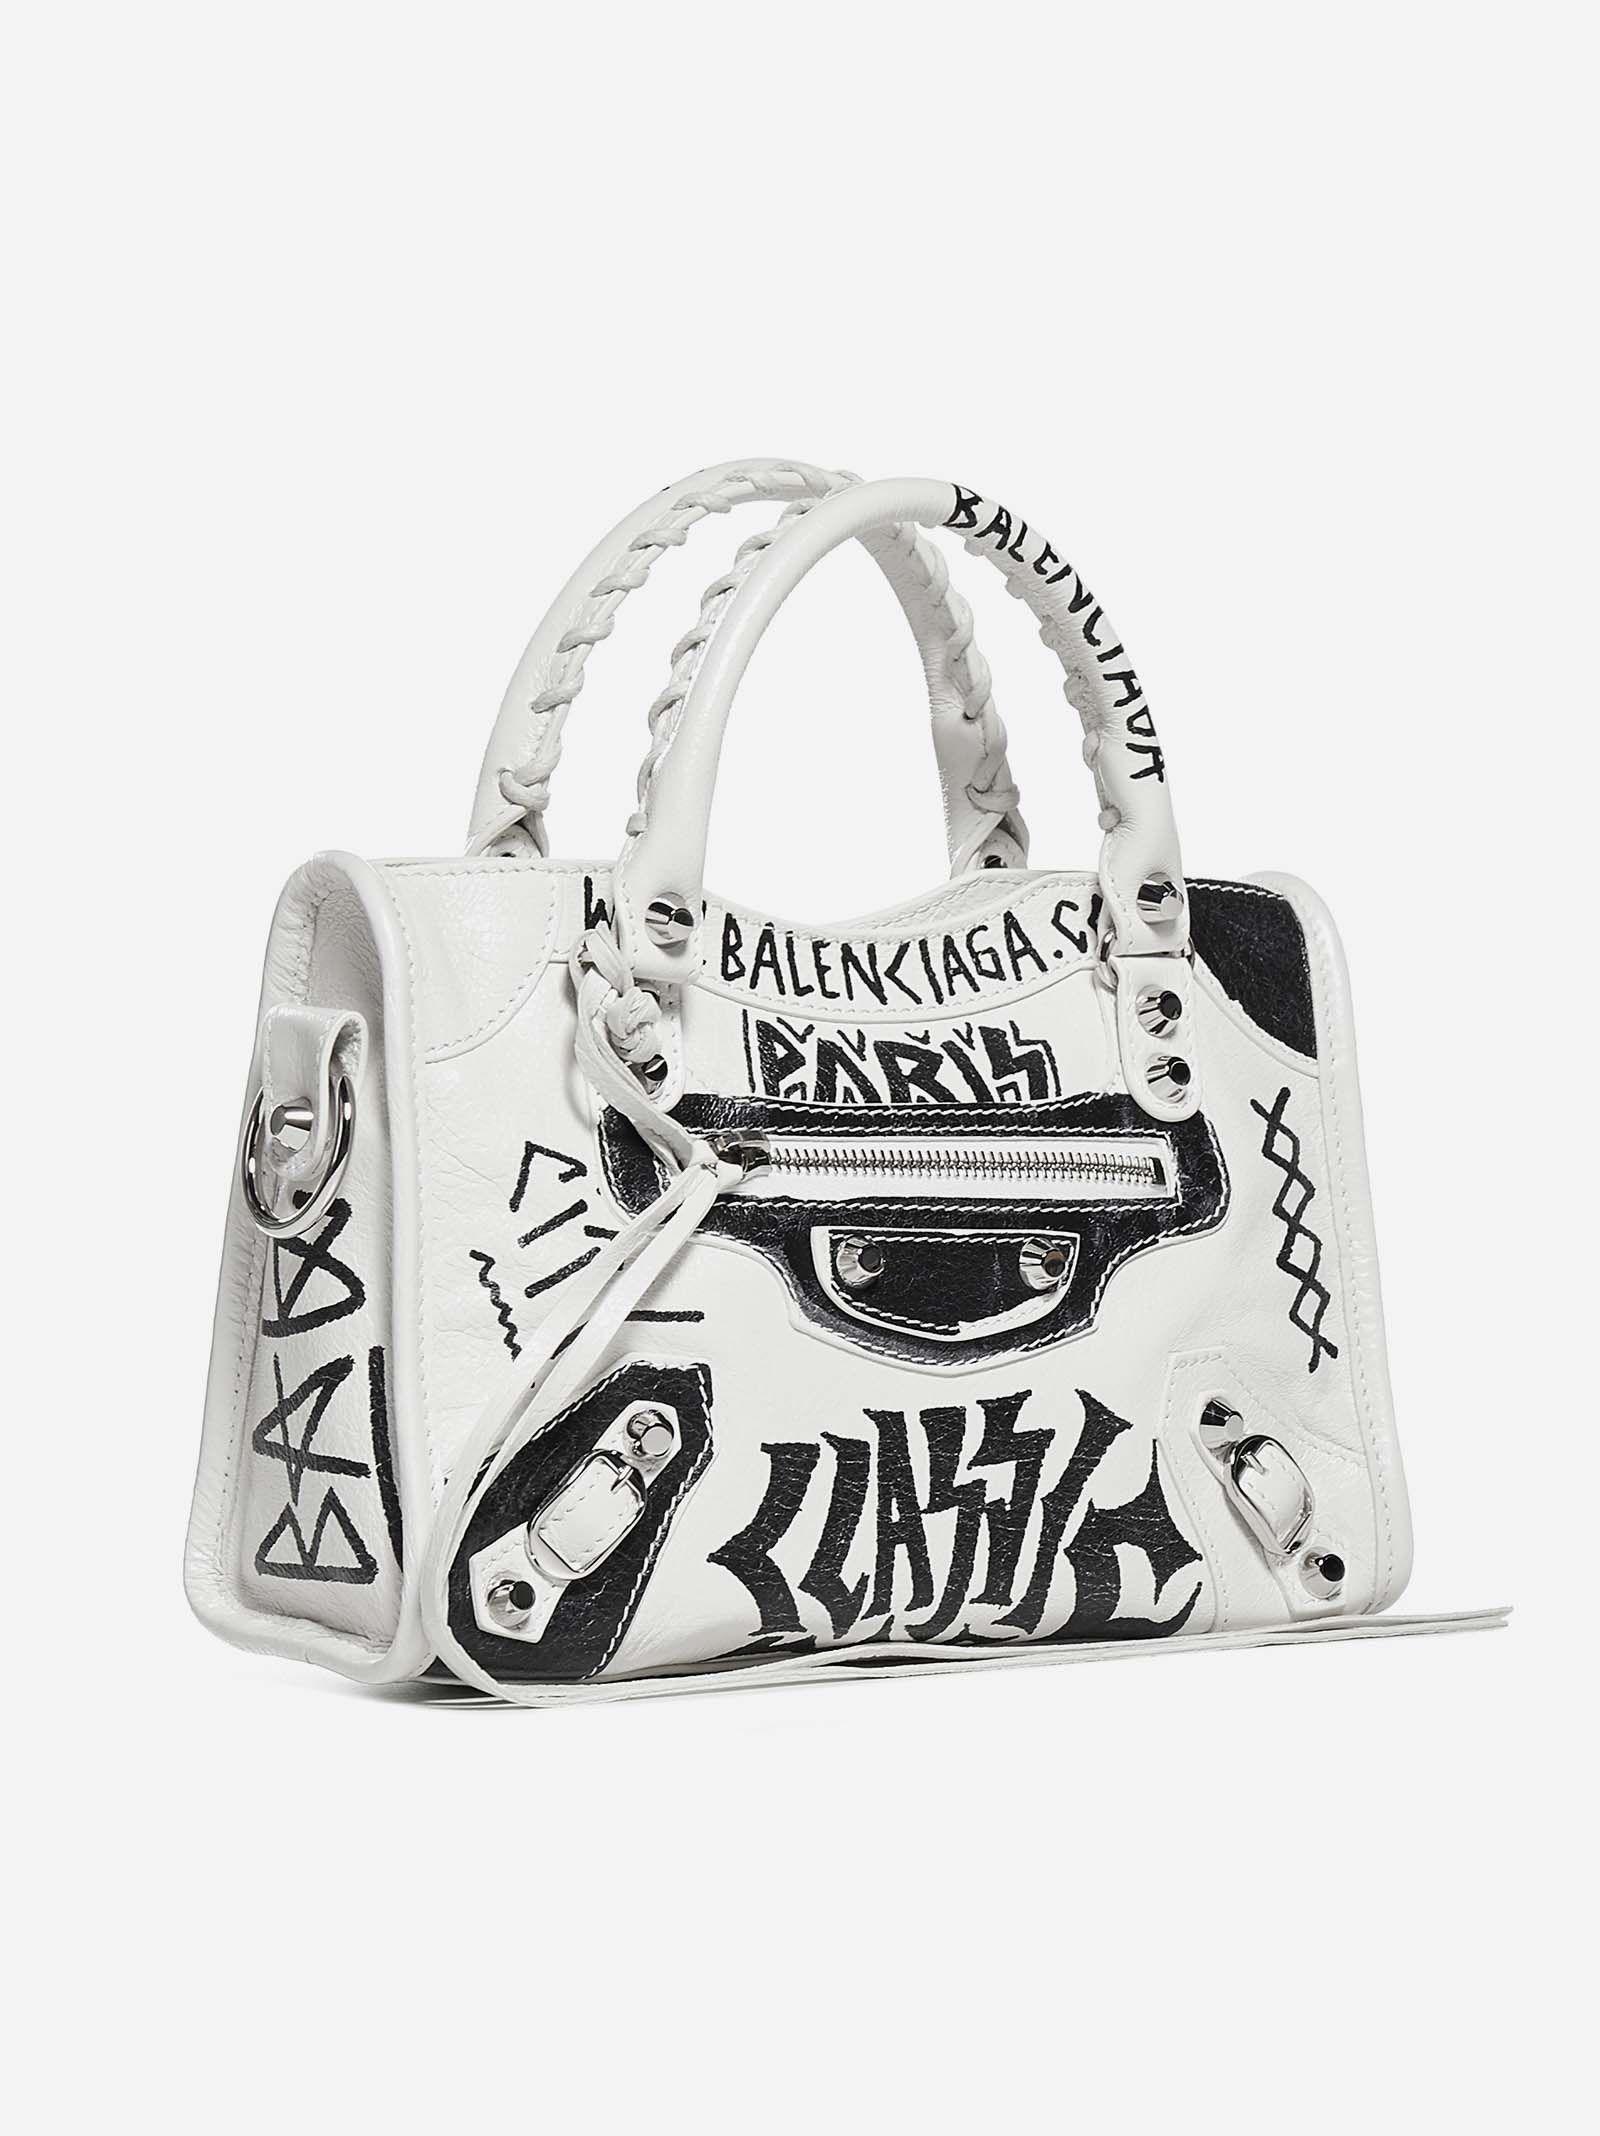 Balenciaga Graffiti Classic City Mini Shoulder Bag in white and multicolor  printed Arena leather